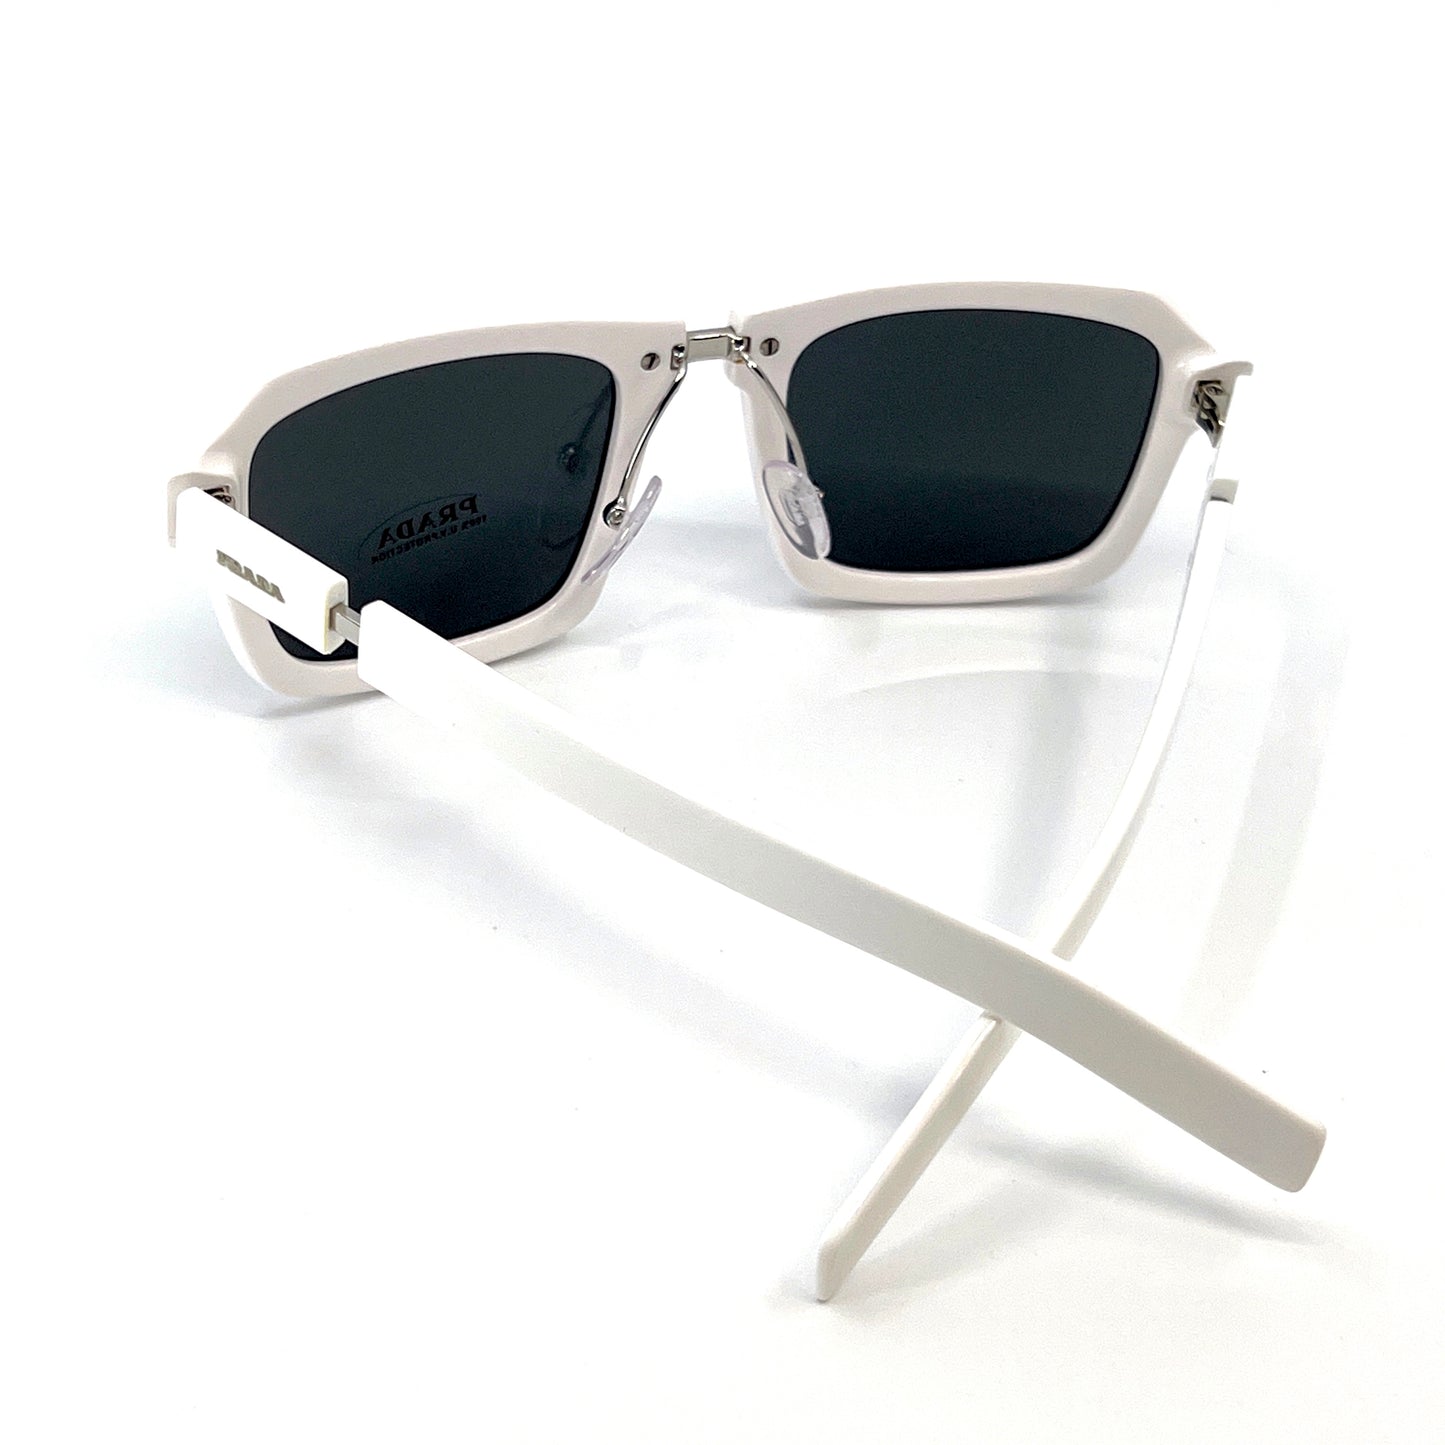 PRADA Sunglasses SPR09X 4AO-5S0